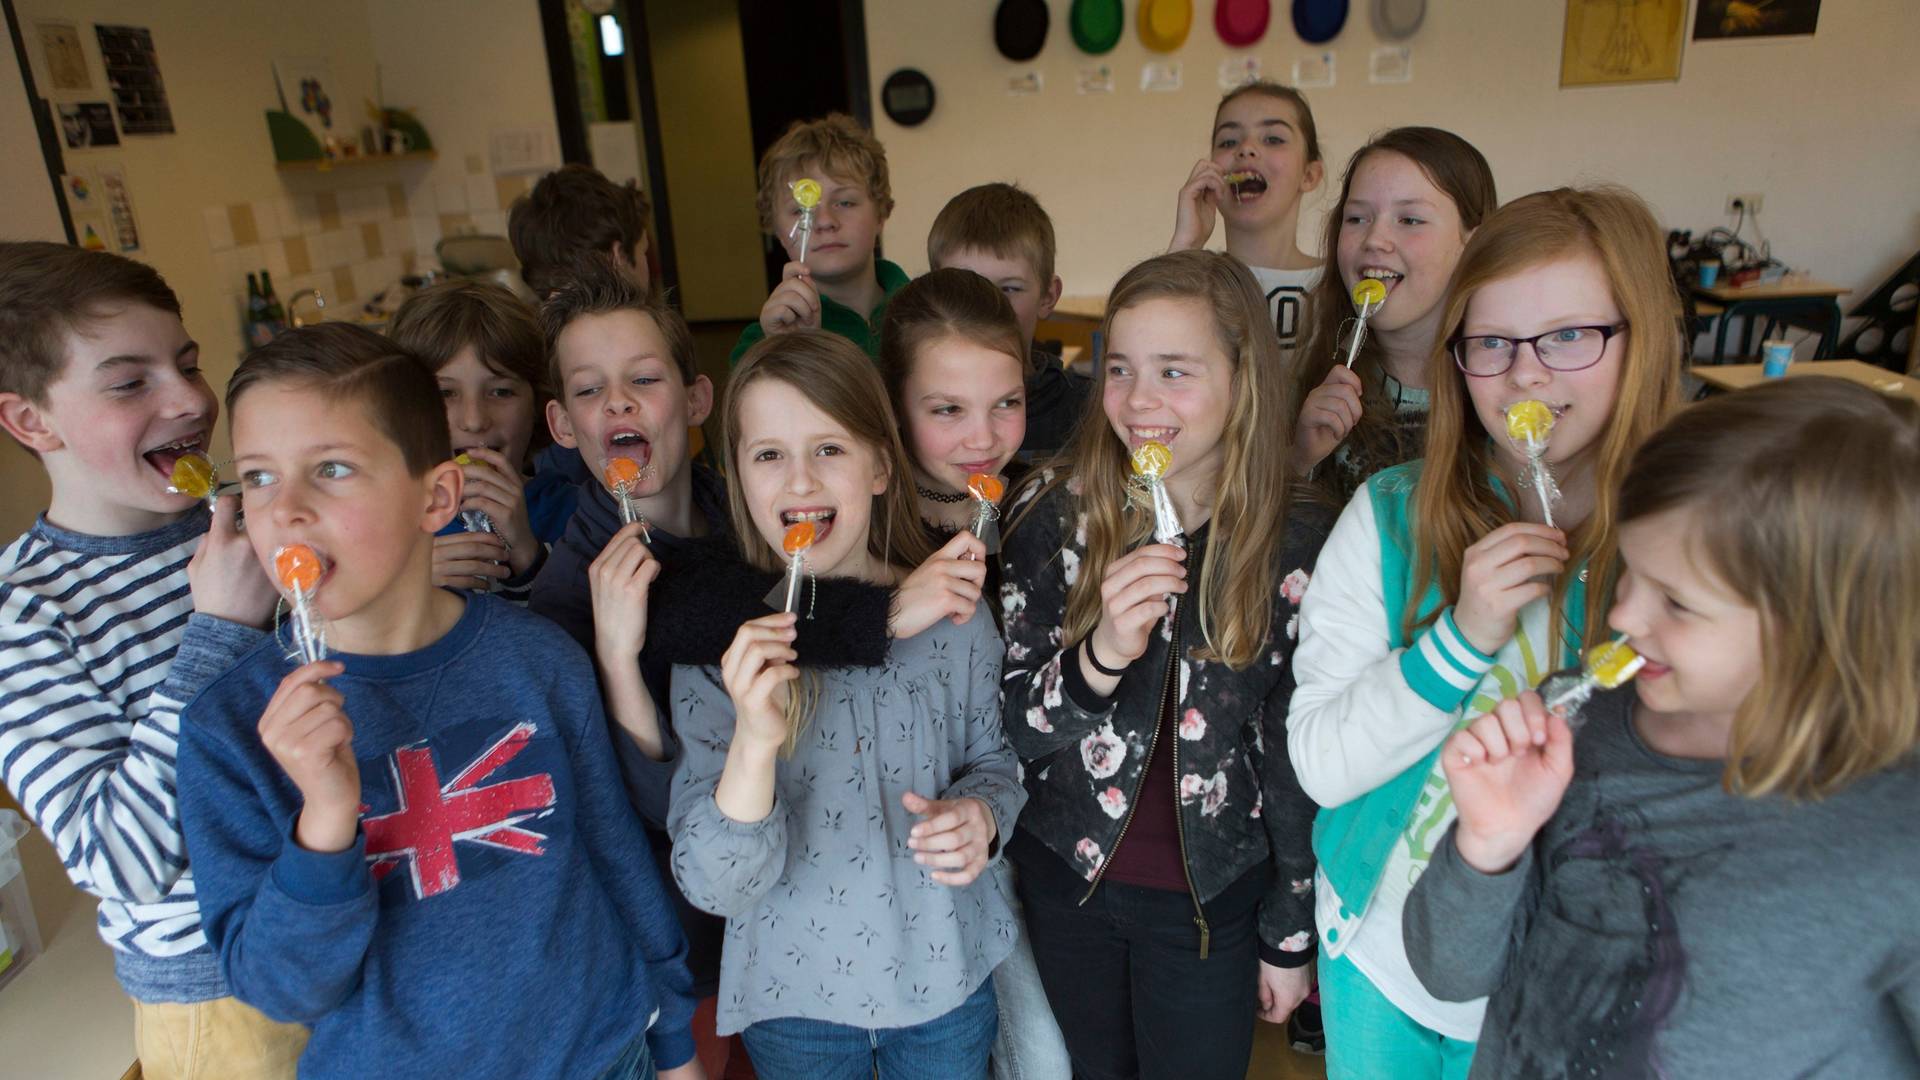 Sarajlije zabranjuju čips, slatkiše i gazirana pića u školama